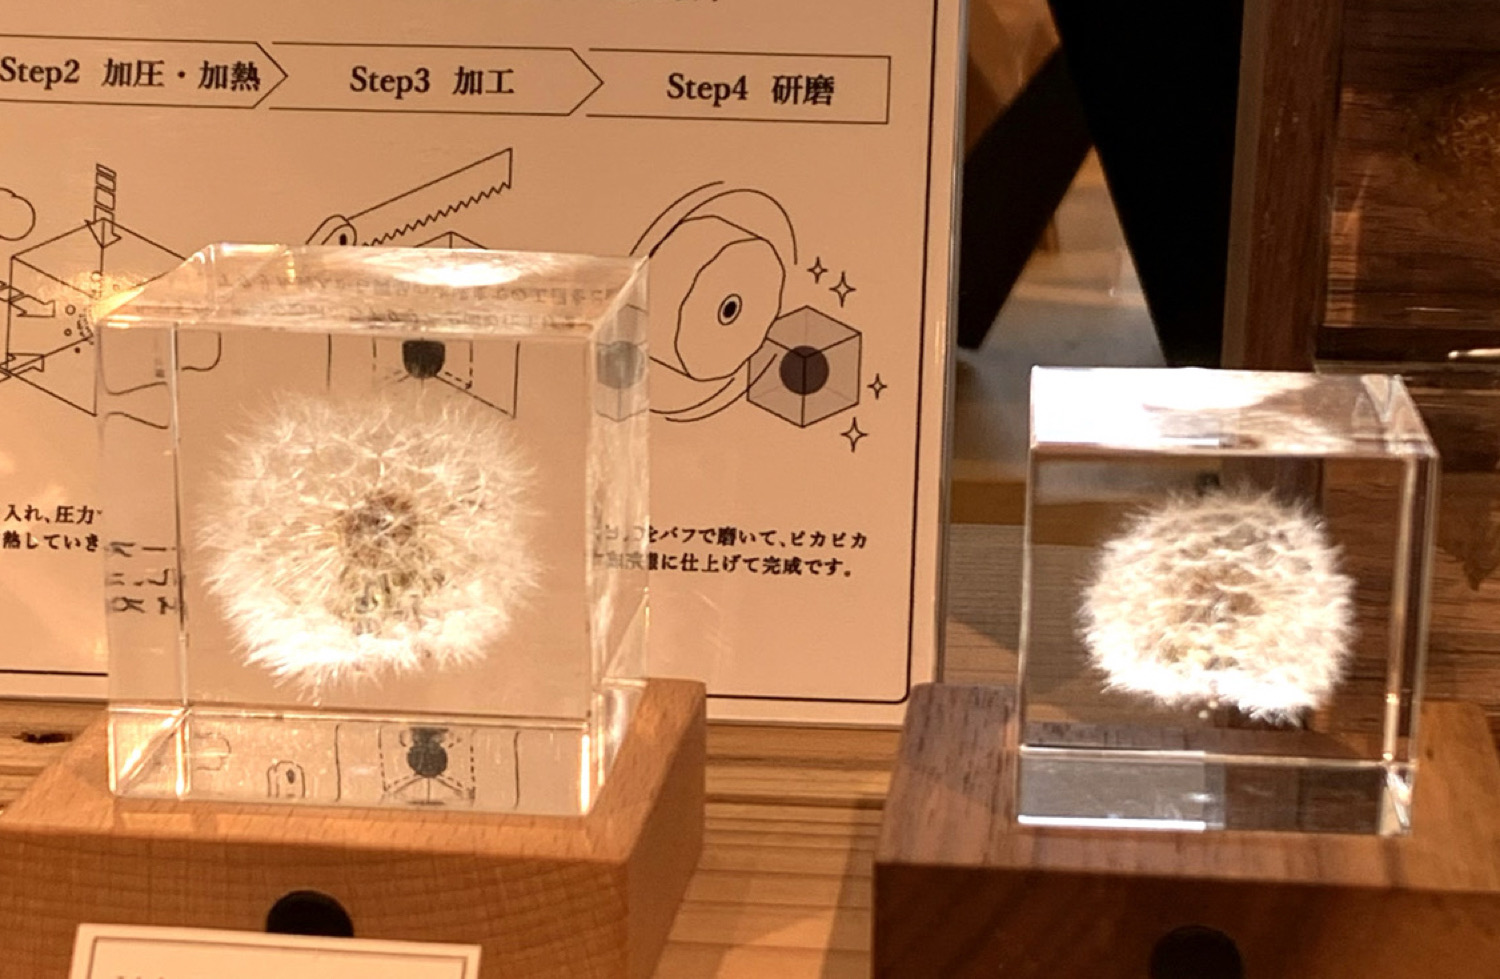 「Sola cube」 タンポポ (4cm角) ウサギノネドコ東京